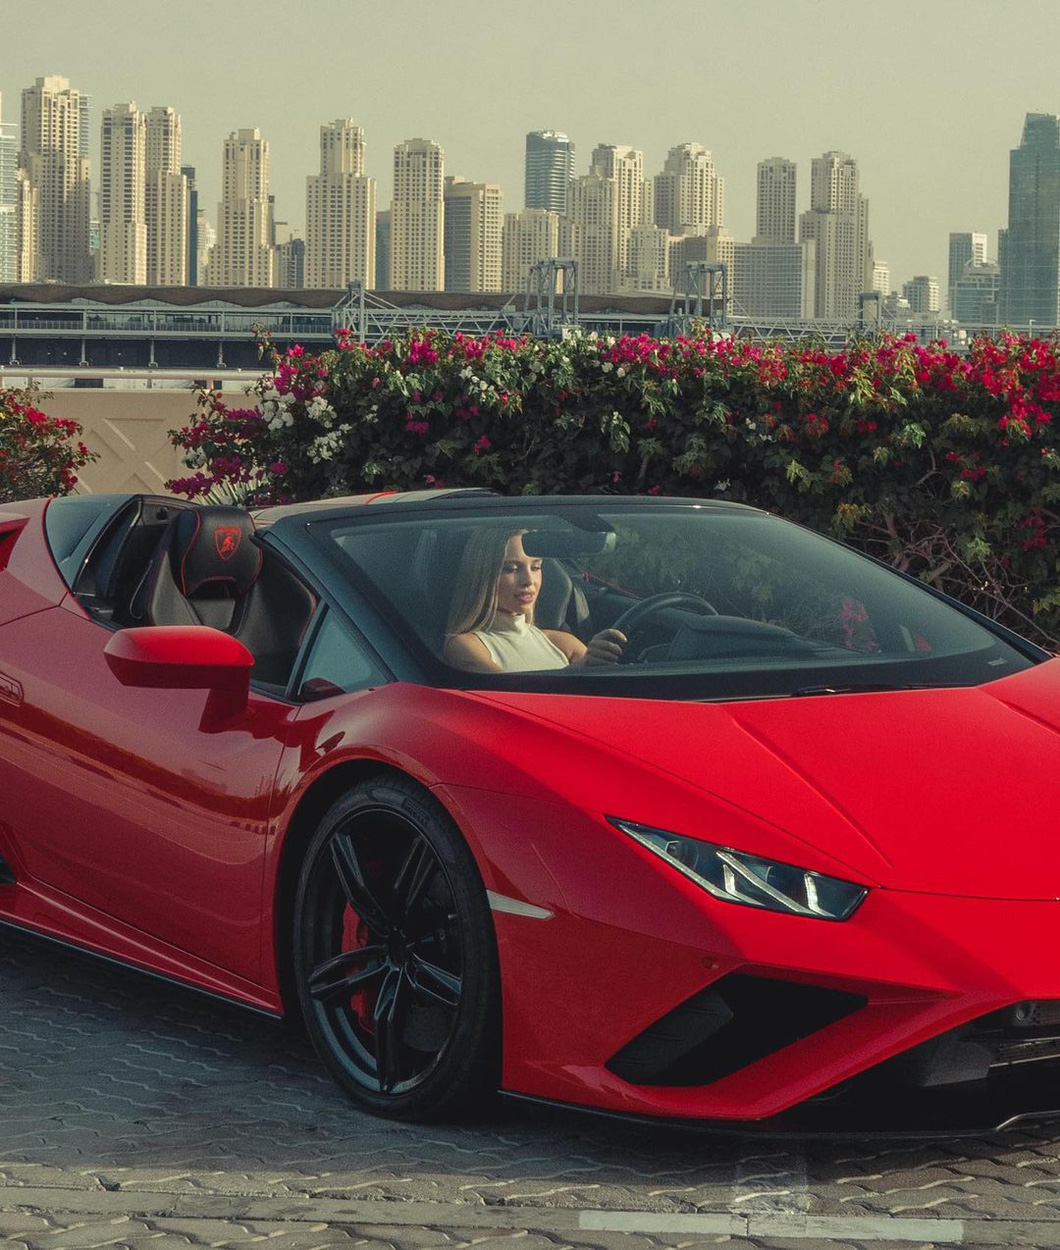 Người mẫu nổi tiếng kéo siêu xe Lamborghini đi dạo như dắt cún, cư dân mạng xuýt xoa - Ảnh 4.